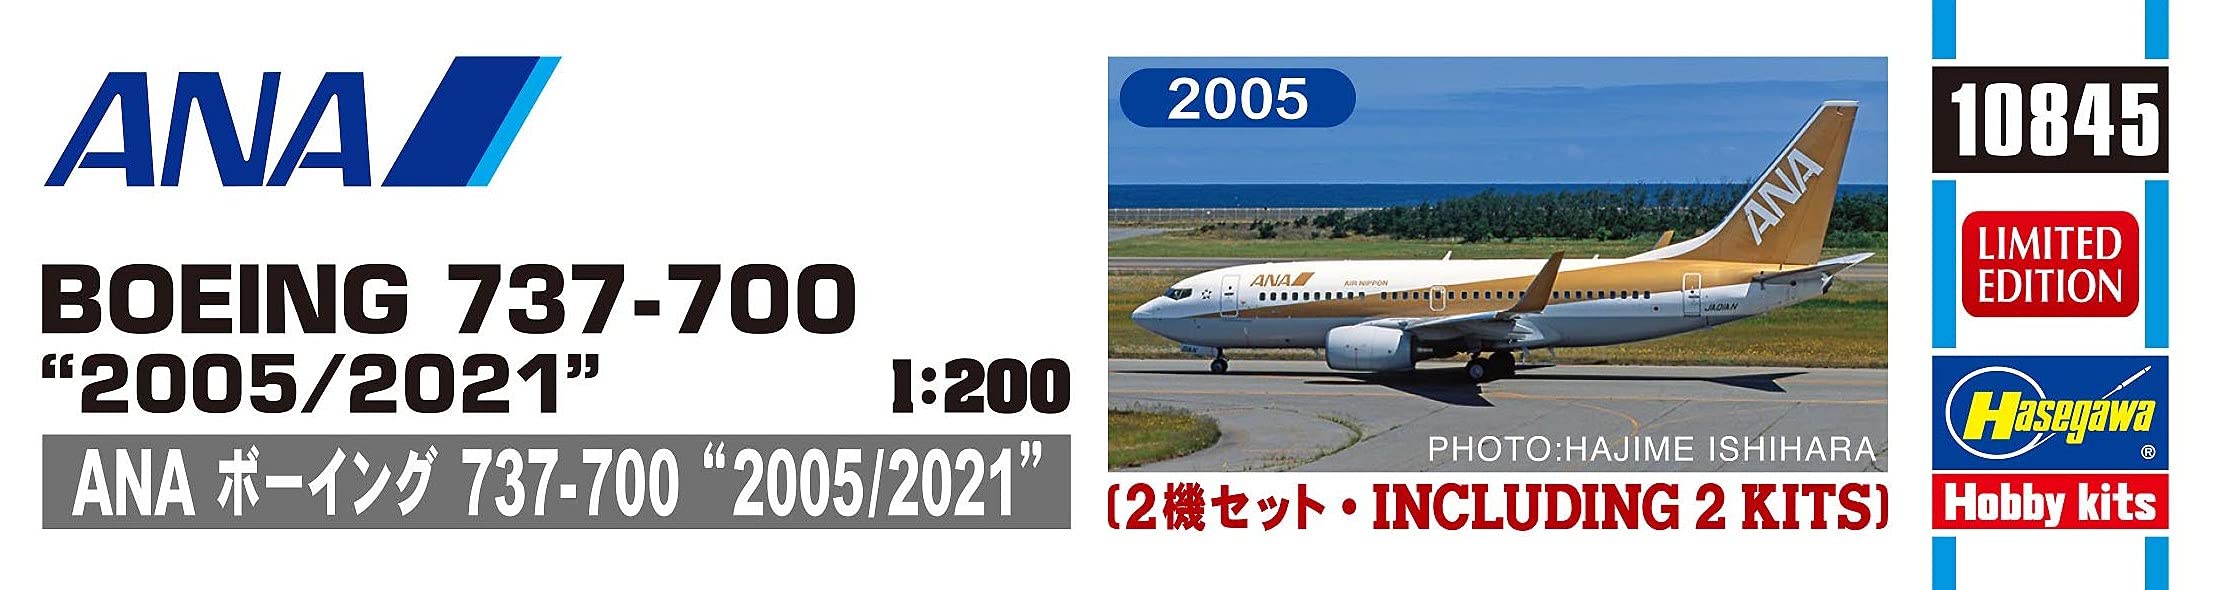 HASEGAWA 1/200 Ana Boeing 737-700 '2005/2011' Maquette Plastique